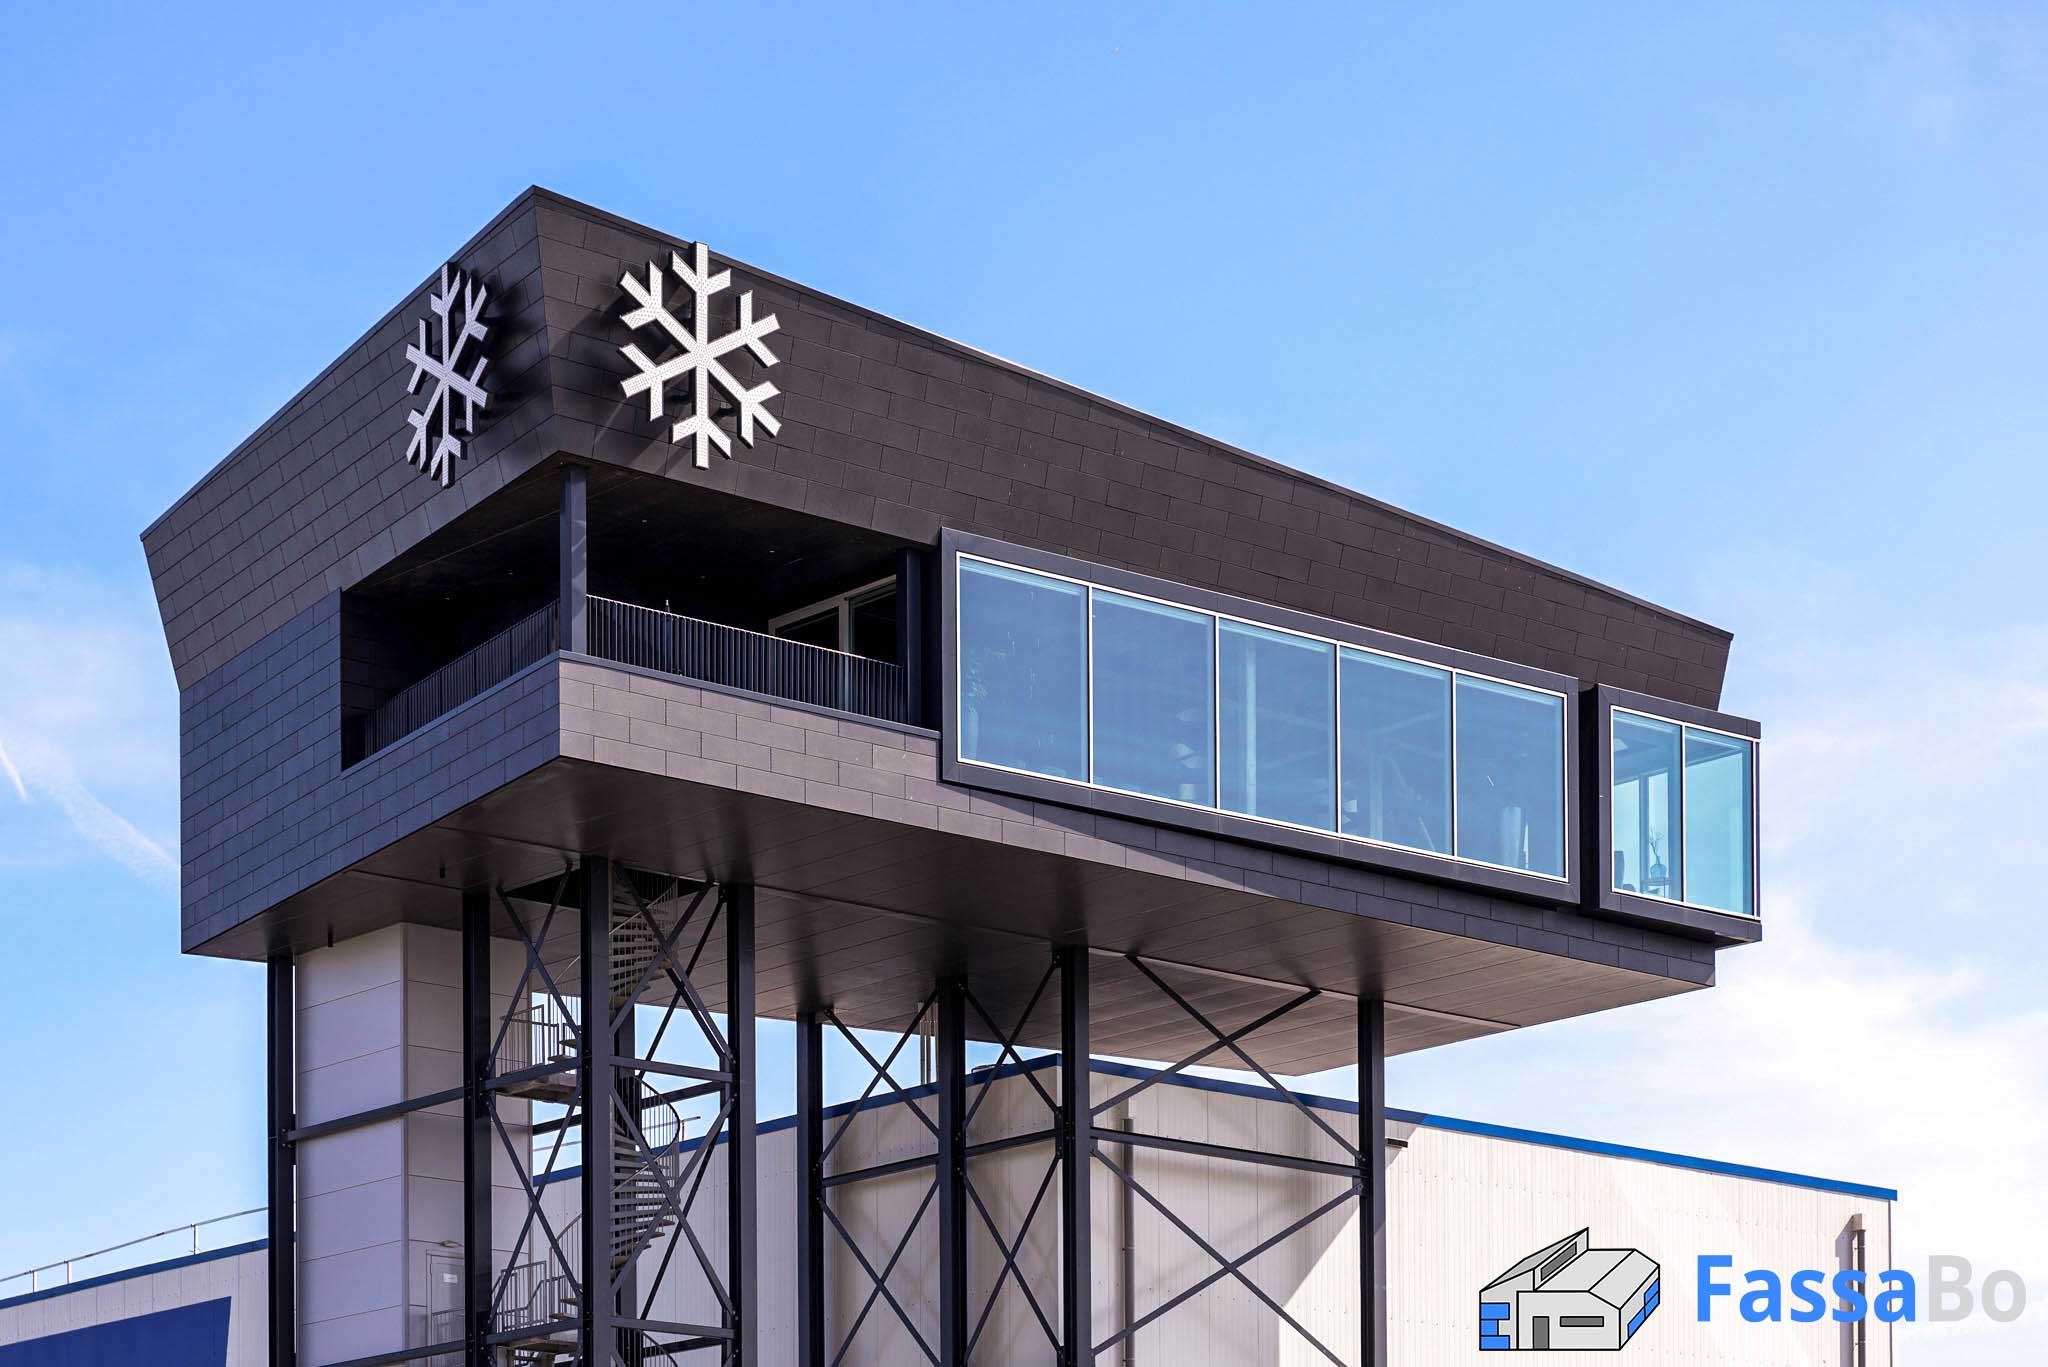 Skybox von Kloosterboer: "Schwebender" Konferenzraum mit Pfosten Riegel Fassade